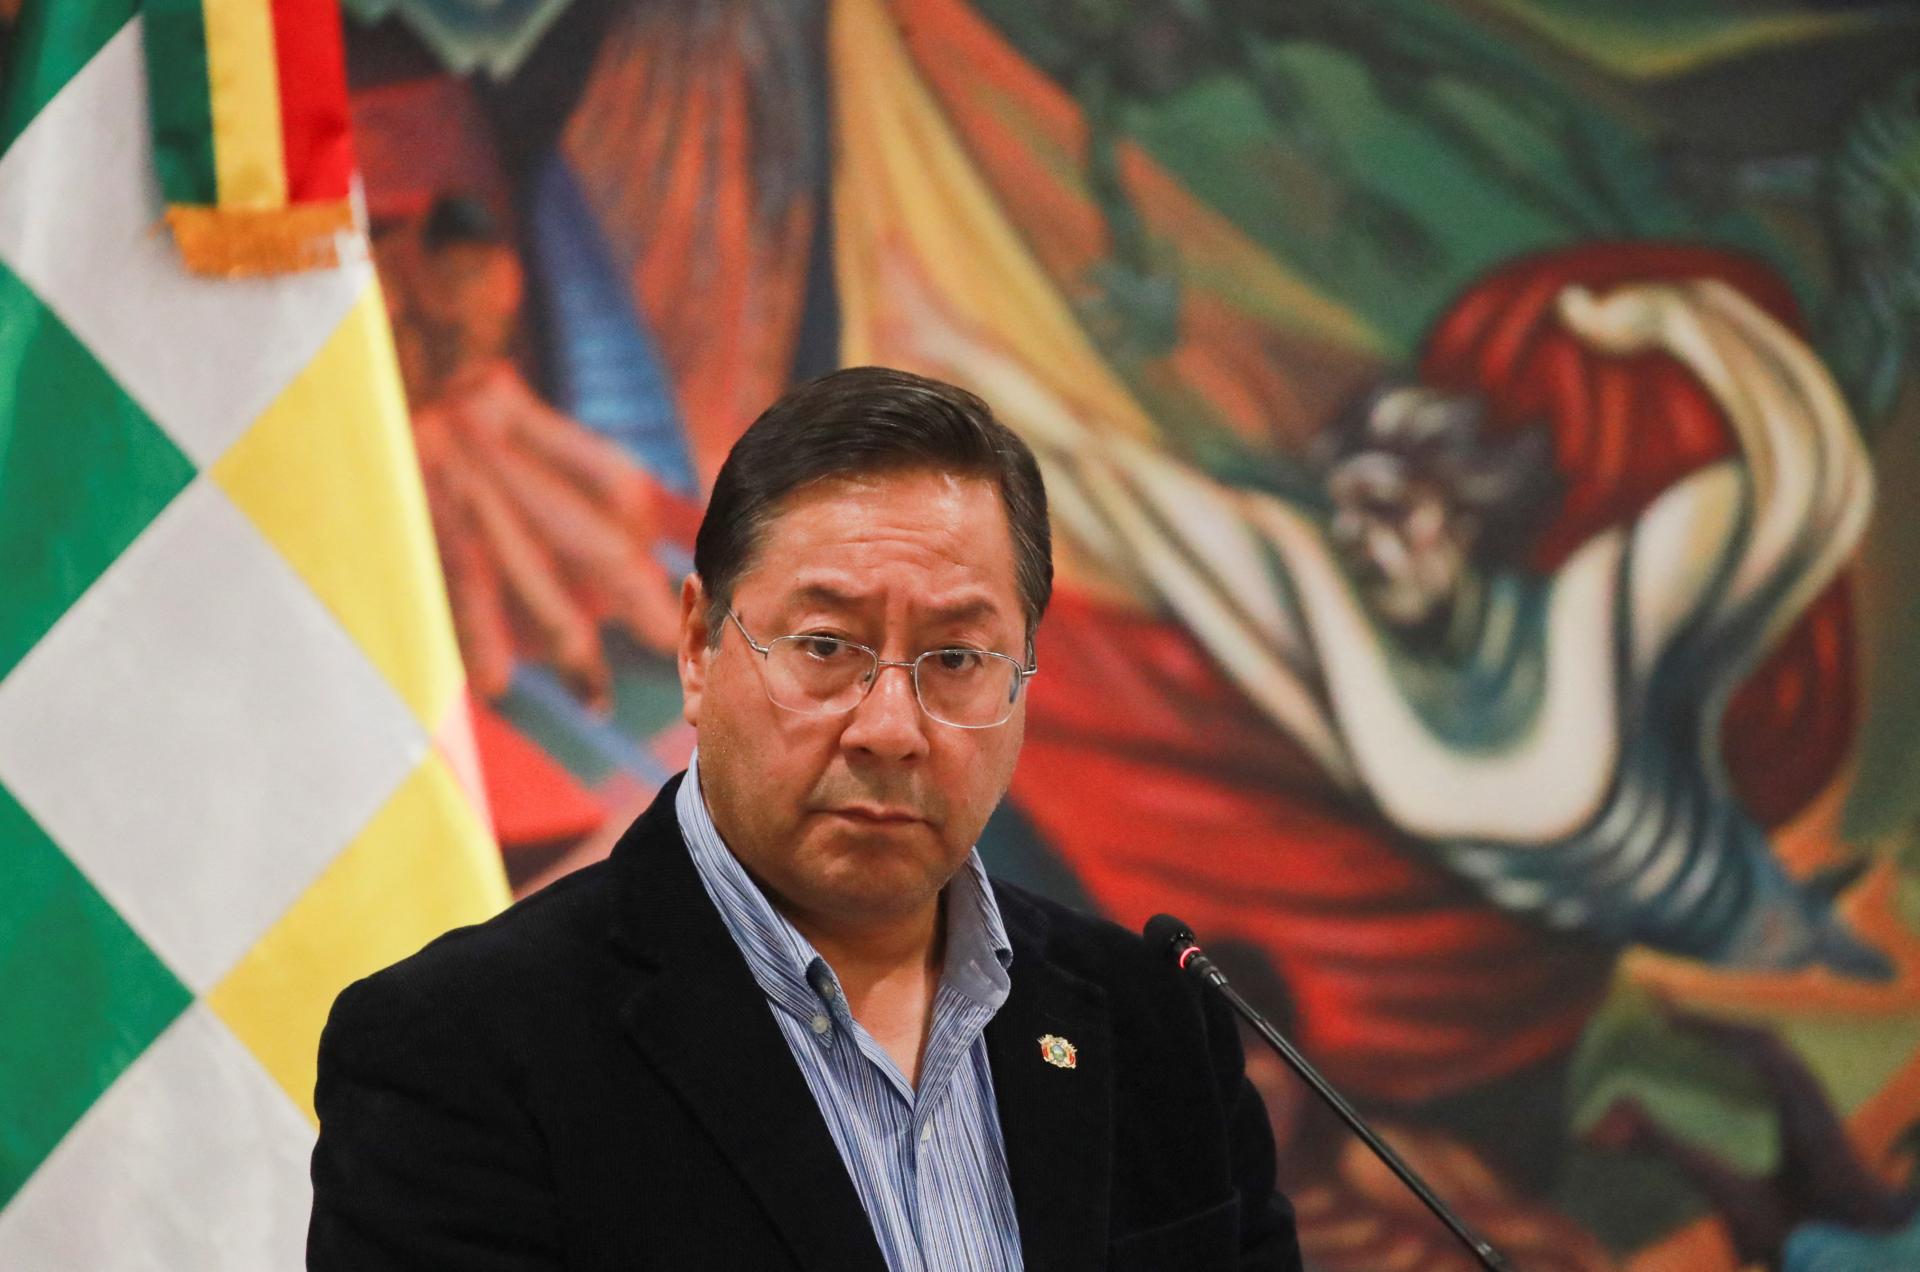 Generál konal na vlastnú päsť. Bolívijský prezident Arce poprel obvinenie, že stál za pokusom o prevrat